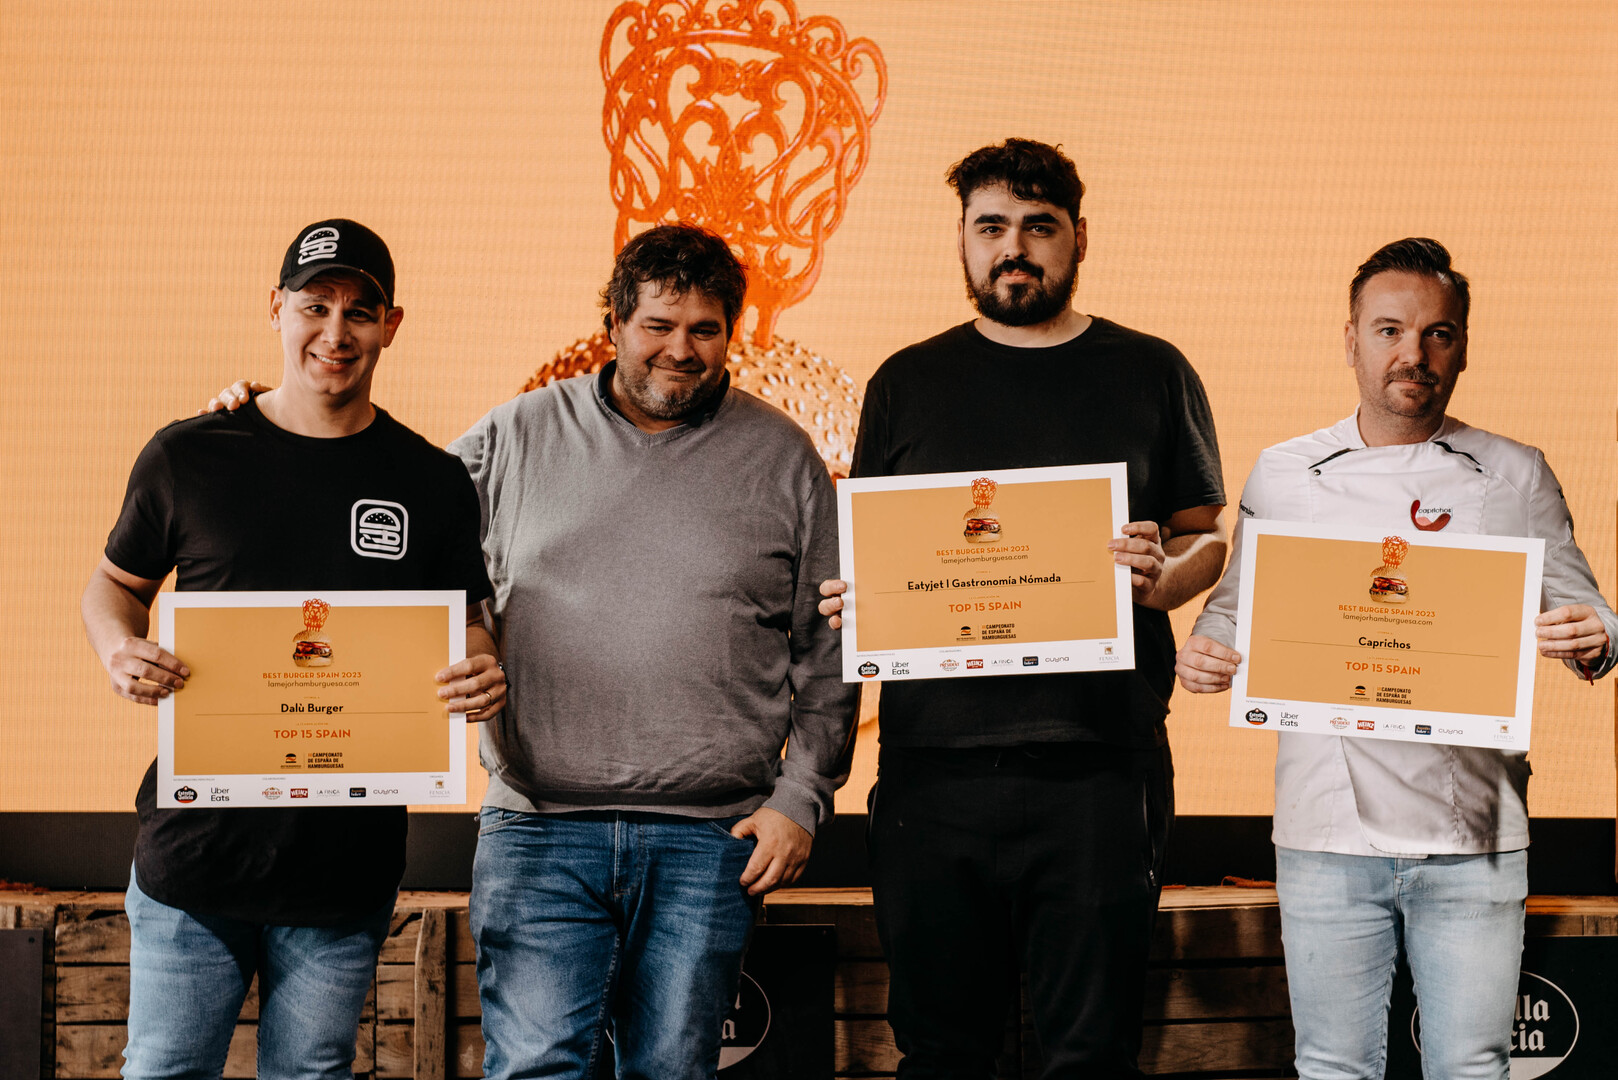 D. Fernando Agrasar y los finalistas: Dak Burger, Eatyjet y Caprichos.